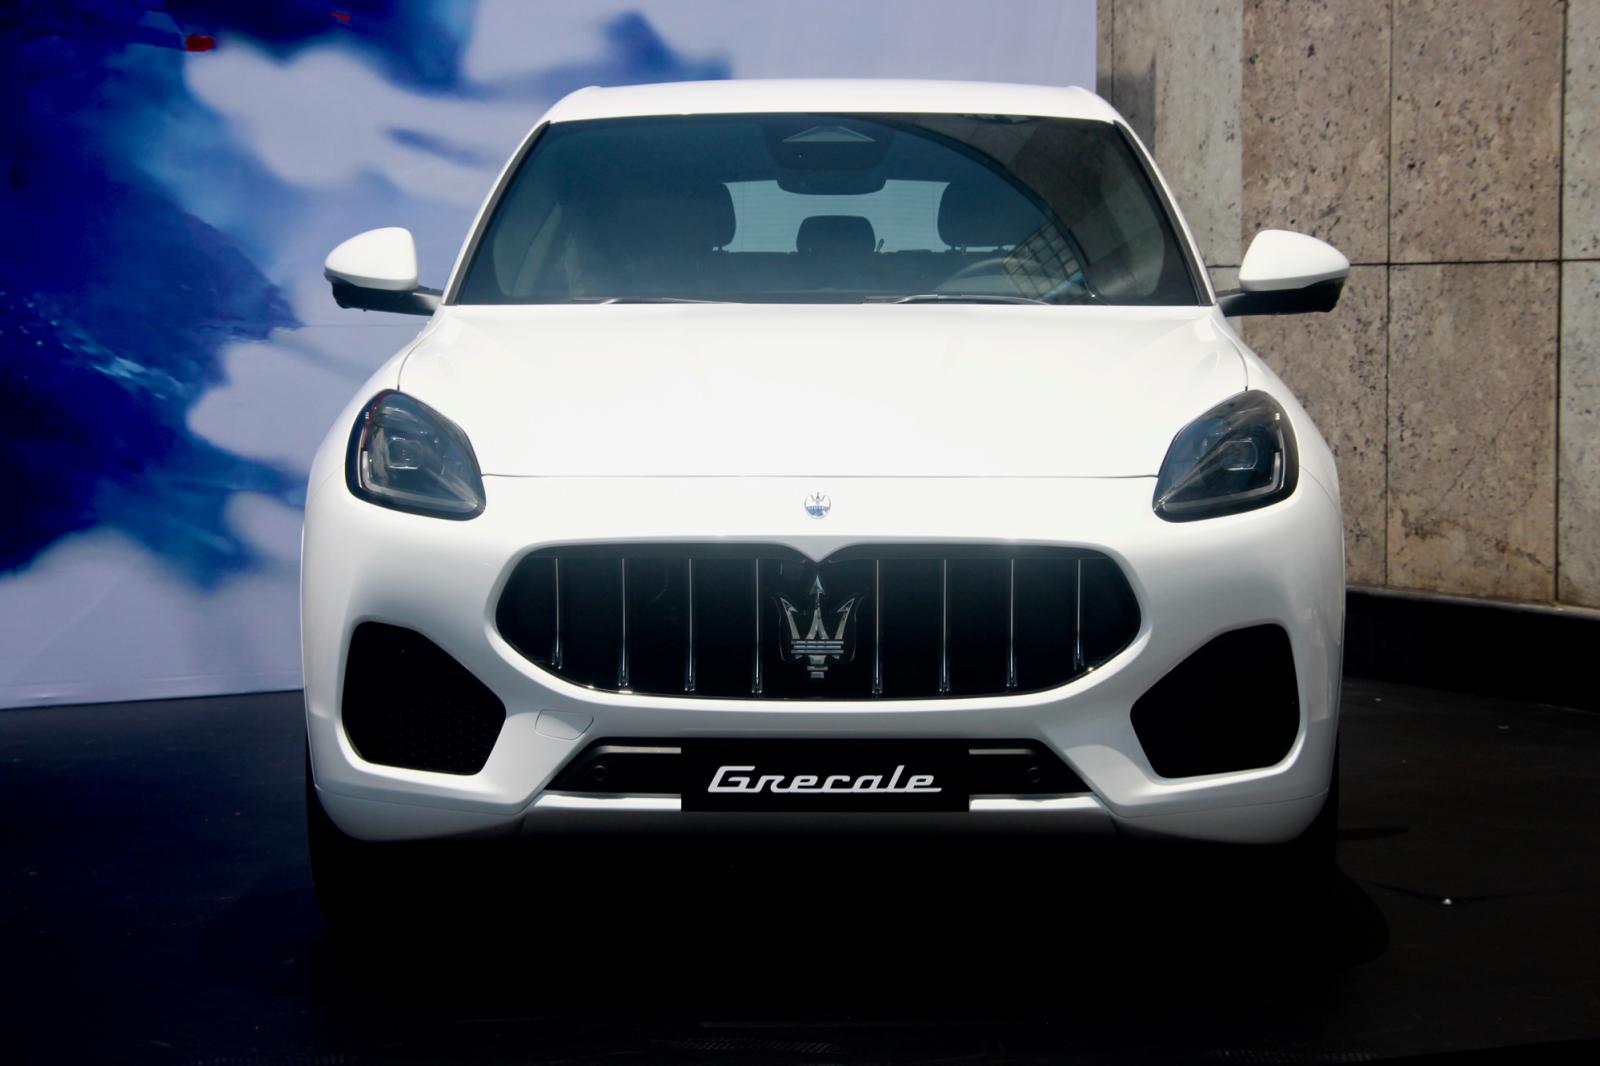 Đầu xe Maserati Grecale thiết kế thể thao, táo bạo.